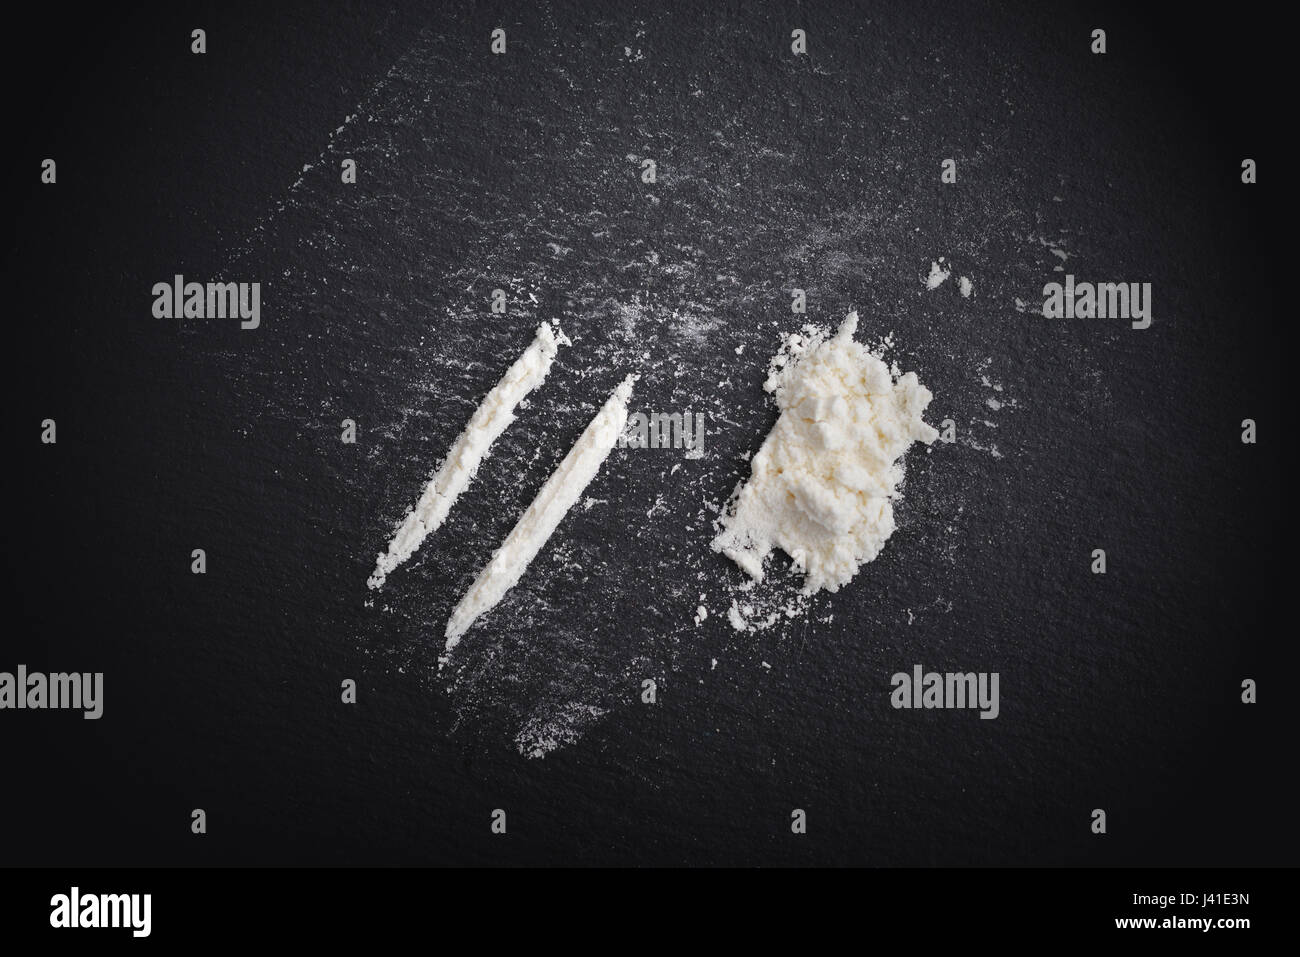 La toxicomanie à la cocaïne. Lignes de la cocaïne sur fond noir Vue de dessus Banque D'Images